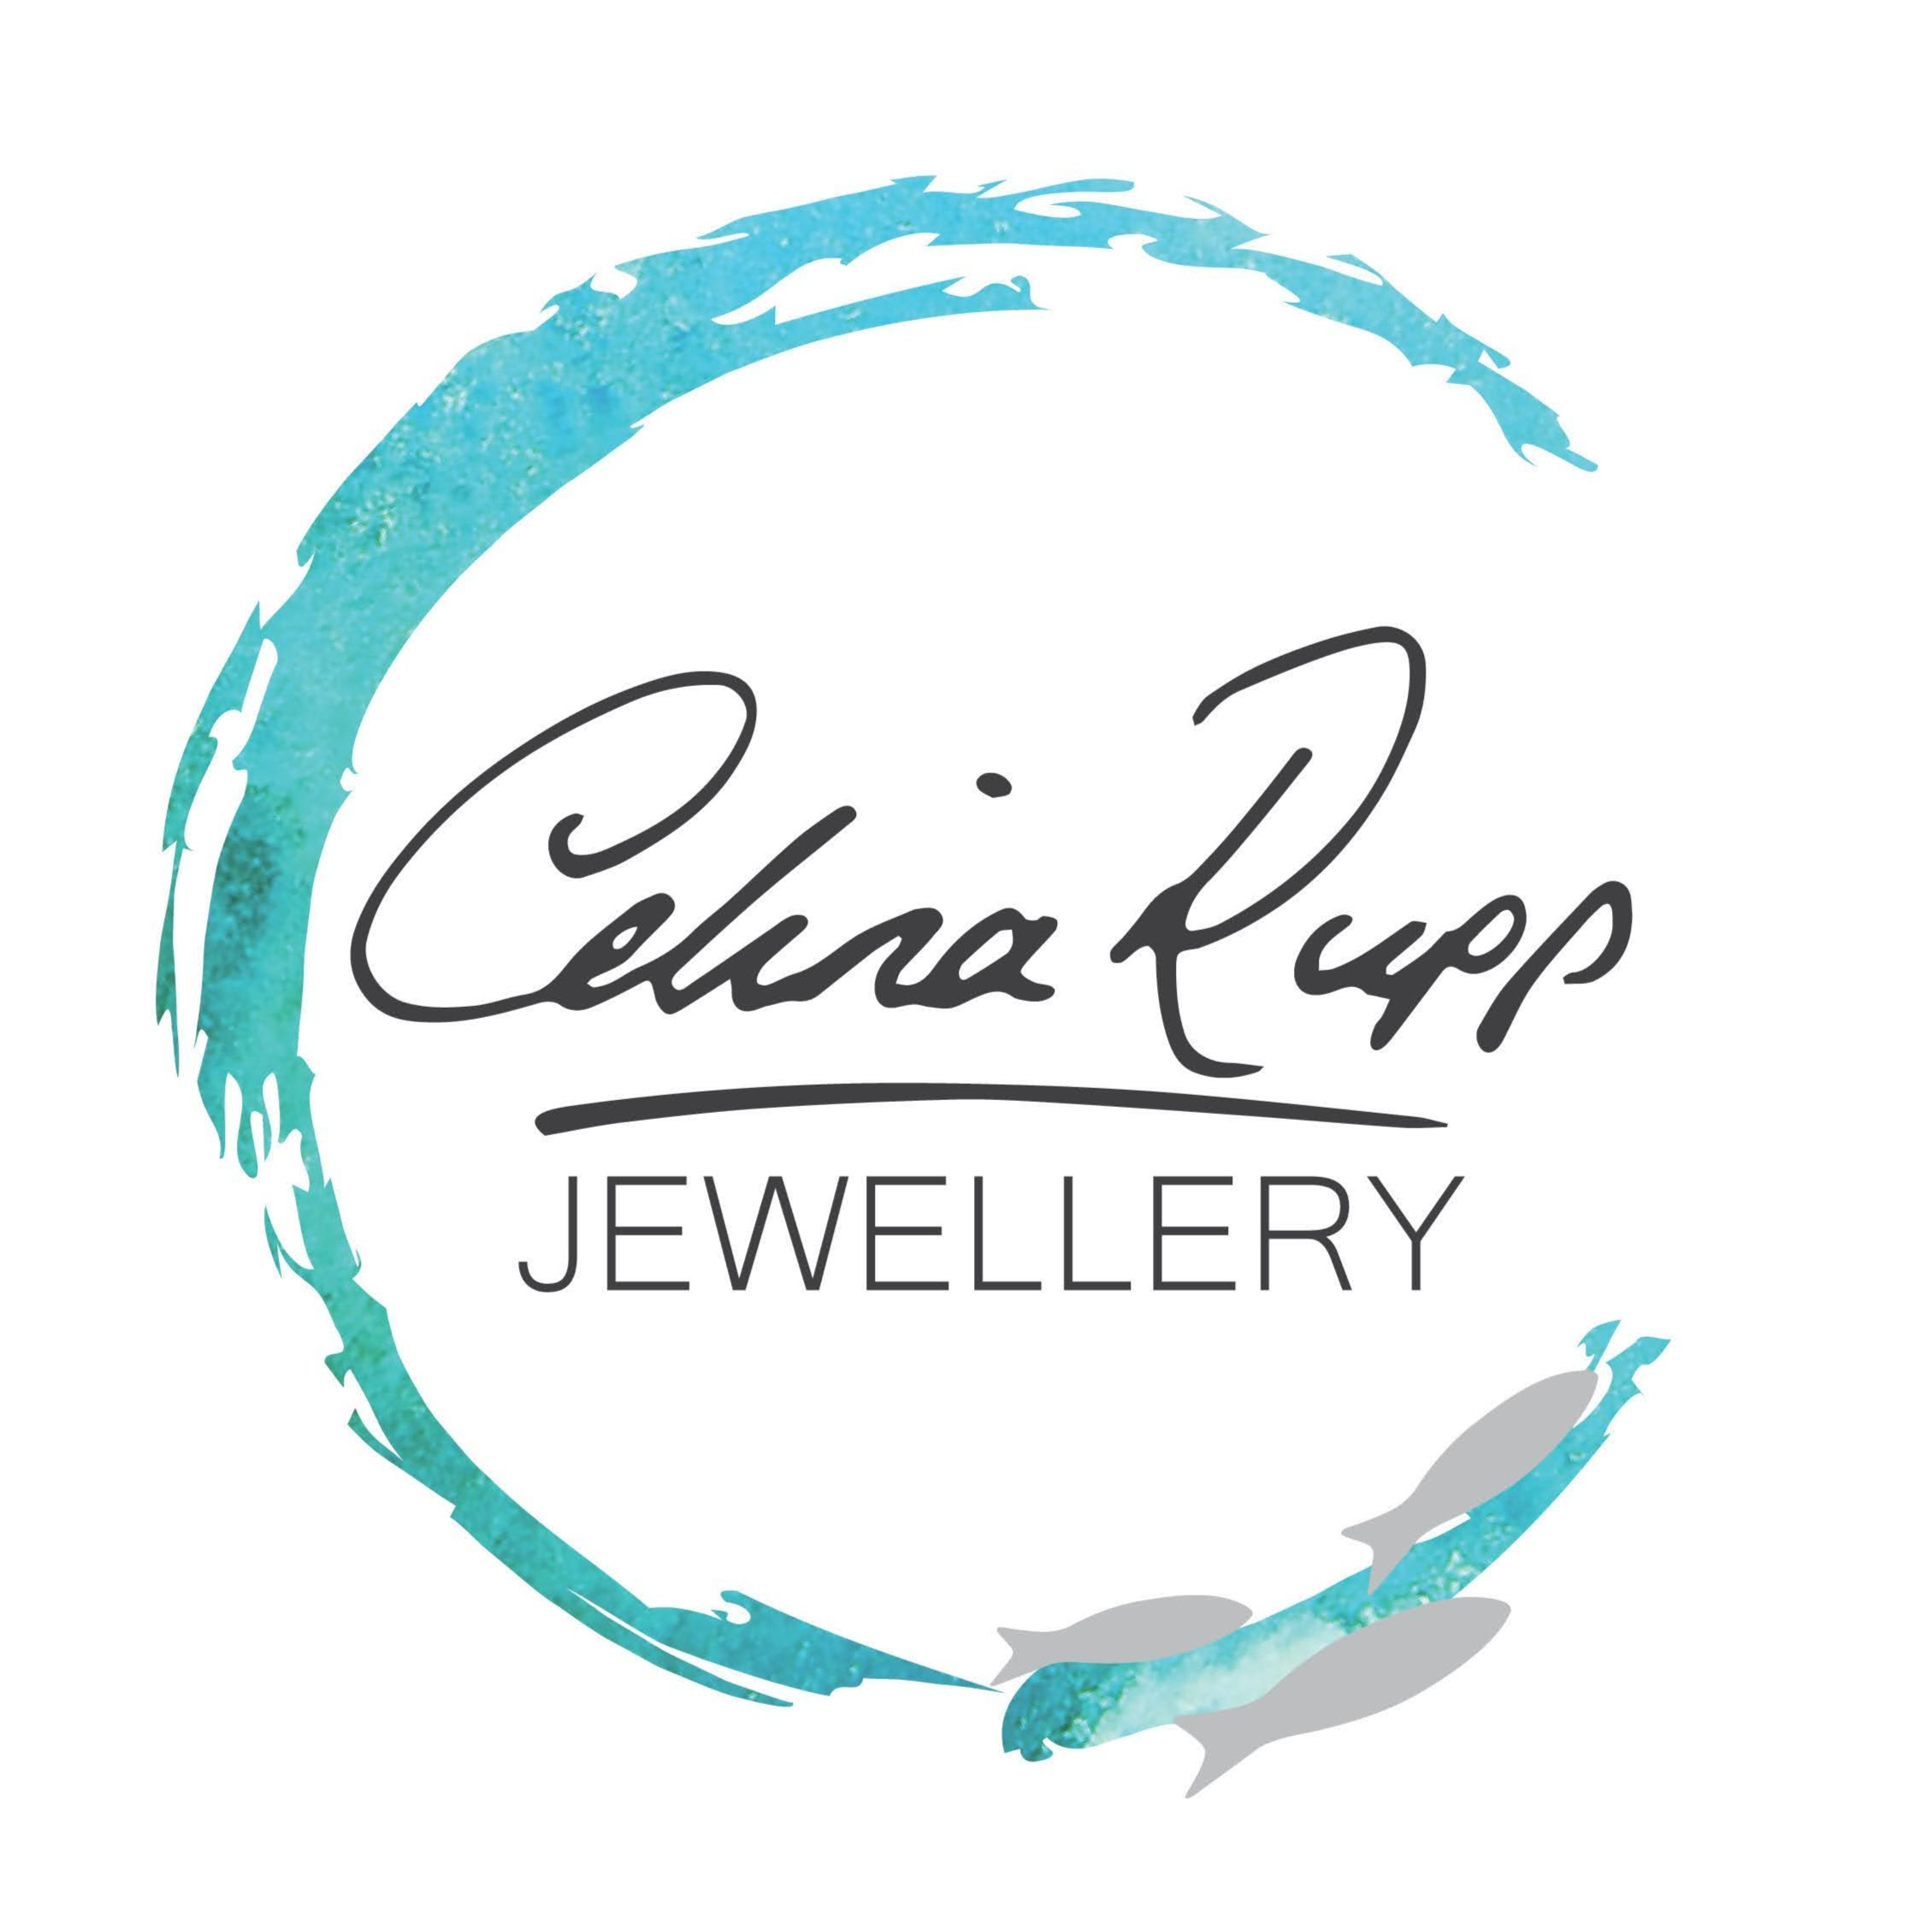 Company Logo For Celina Rupp Jewellery'